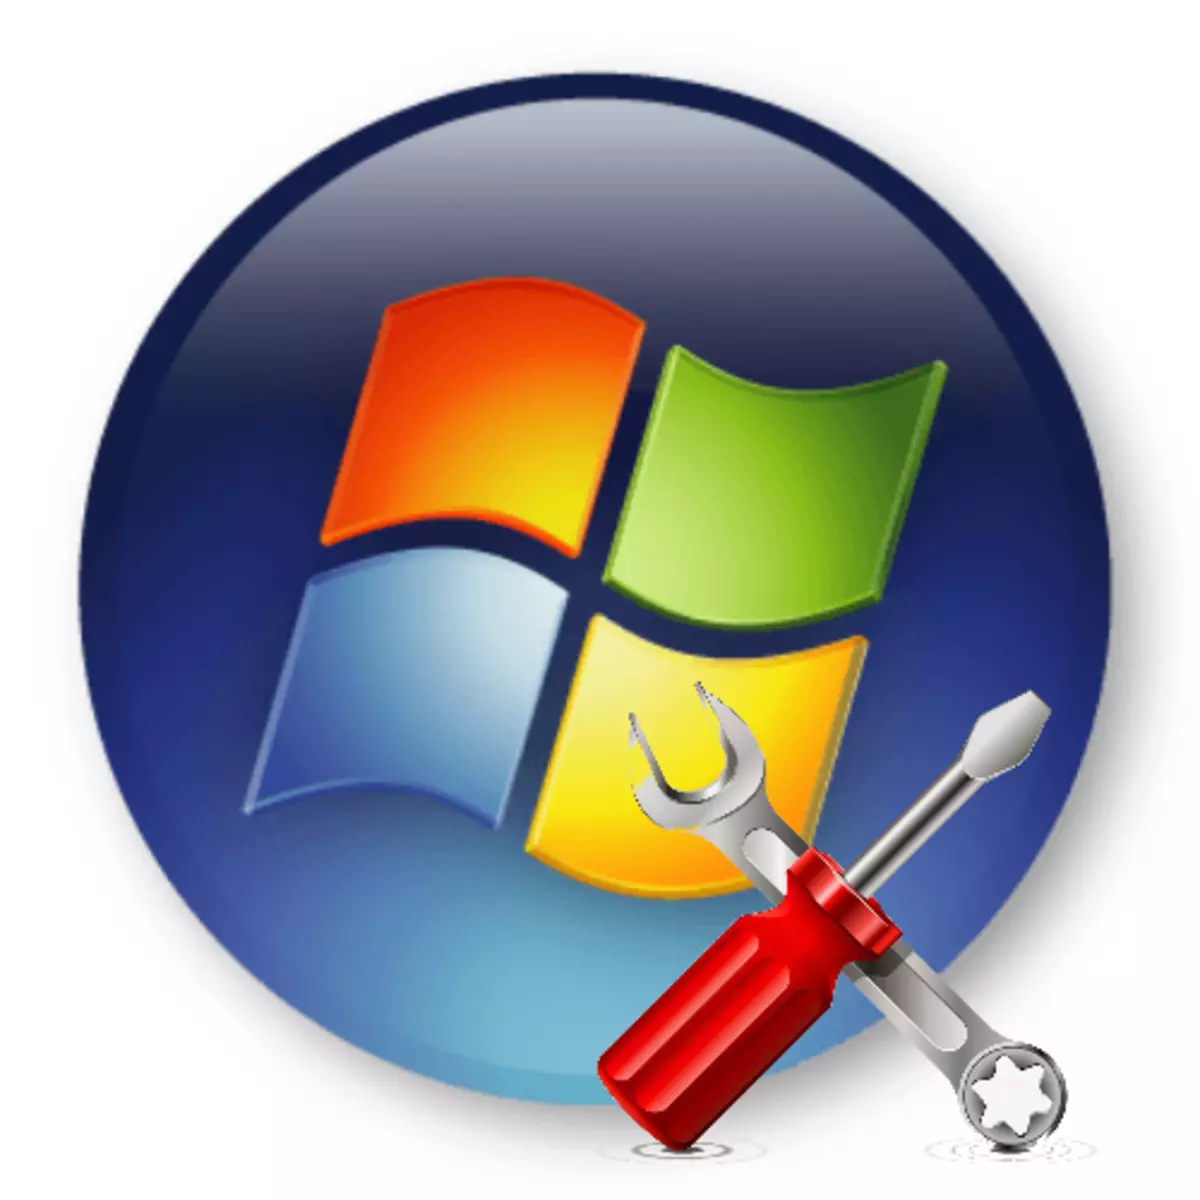 Wiederherstellen des MBR-Boot-Datensatzes in Windows 7